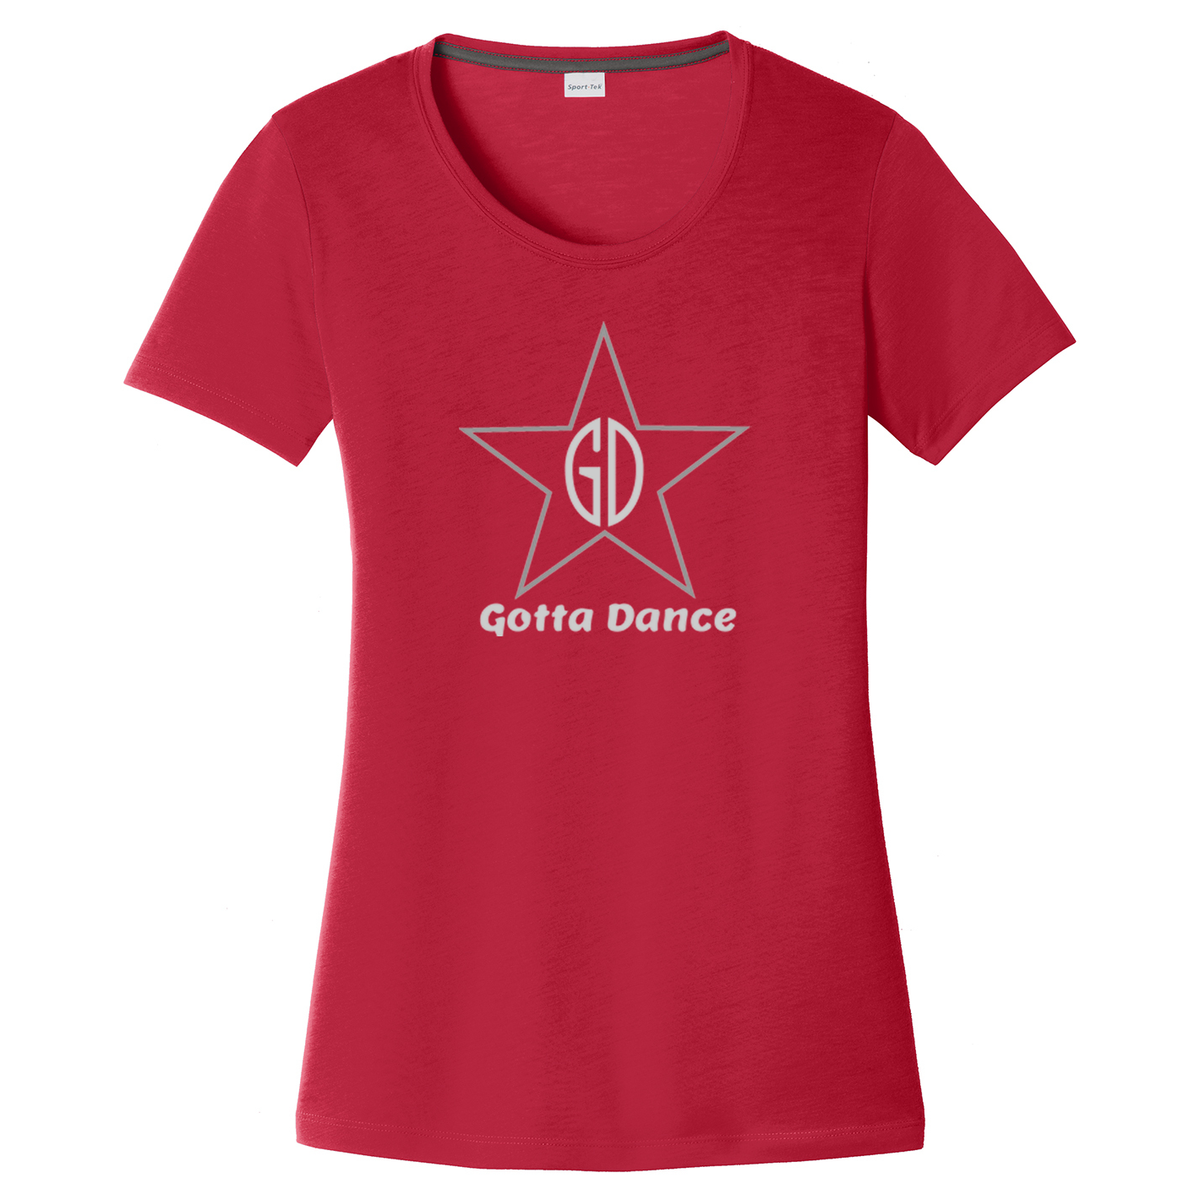 Gotta Dance Women's CottonTouch Performance T-Shirt *GLITTER LOGO*